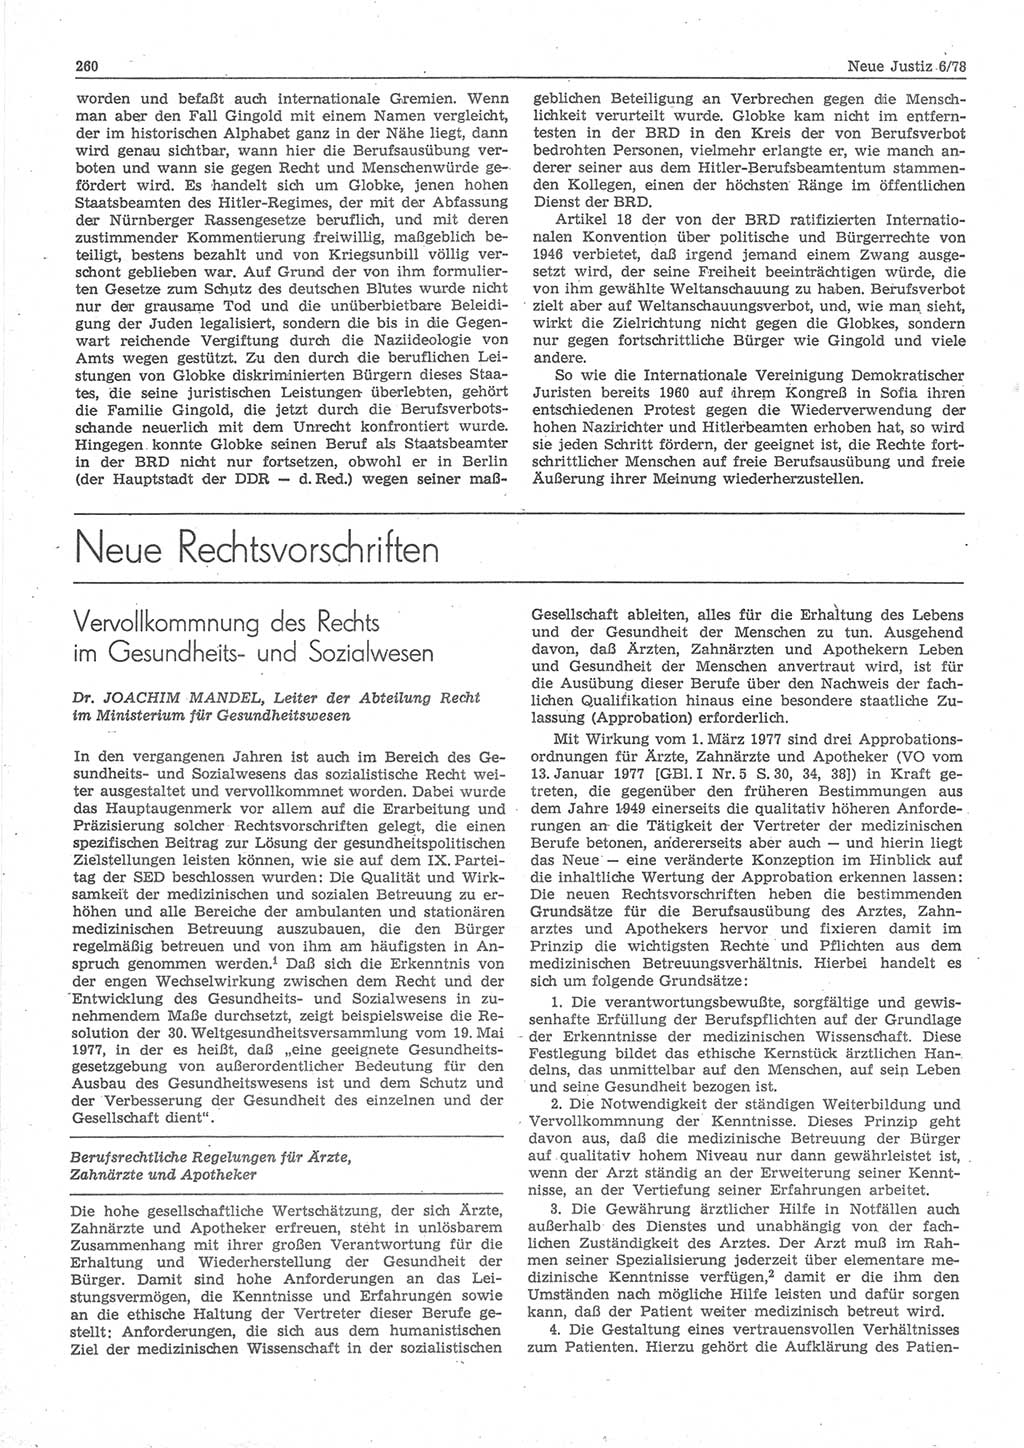 Neue Justiz (NJ), Zeitschrift für sozialistisches Recht und Gesetzlichkeit [Deutsche Demokratische Republik (DDR)], 32. Jahrgang 1978, Seite 260 (NJ DDR 1978, S. 260)